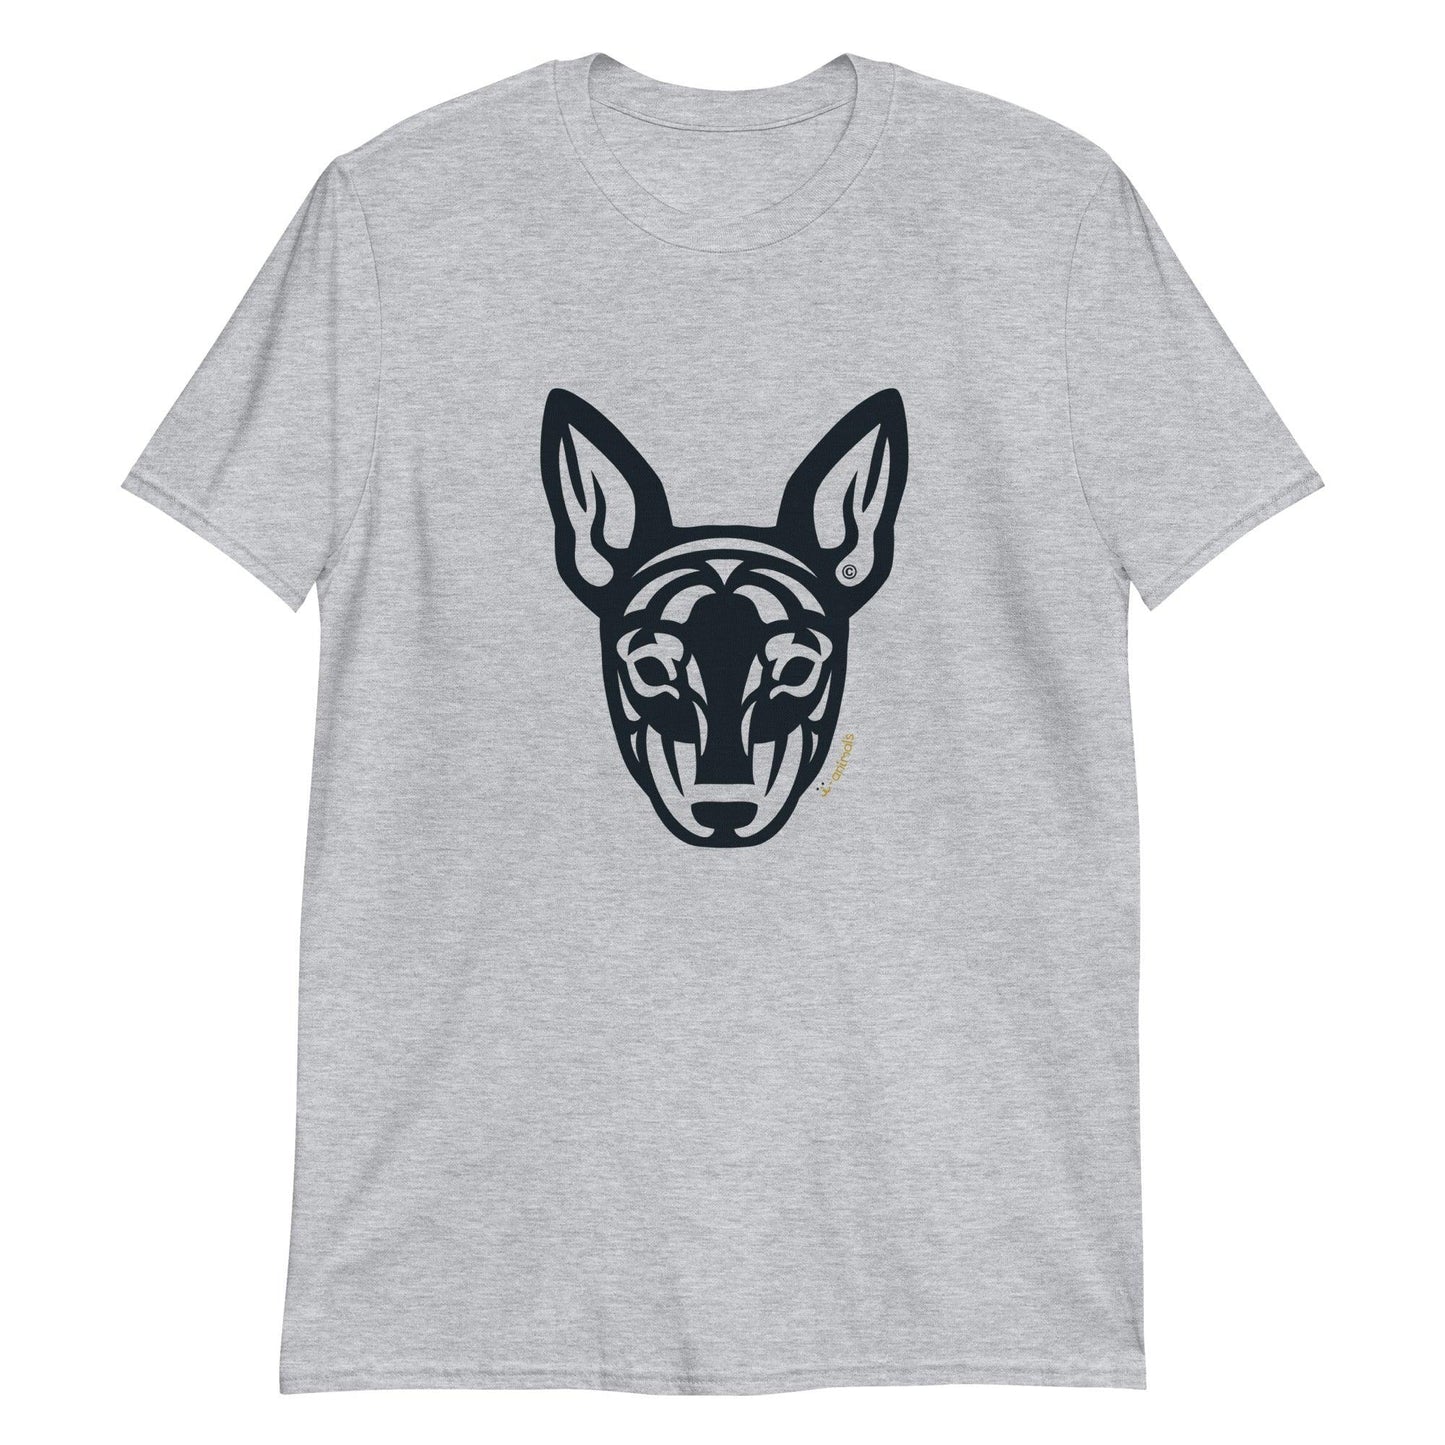 Camiseta unissex de manga curta -  Pinscher - Tribal - Cores Claras i-animals